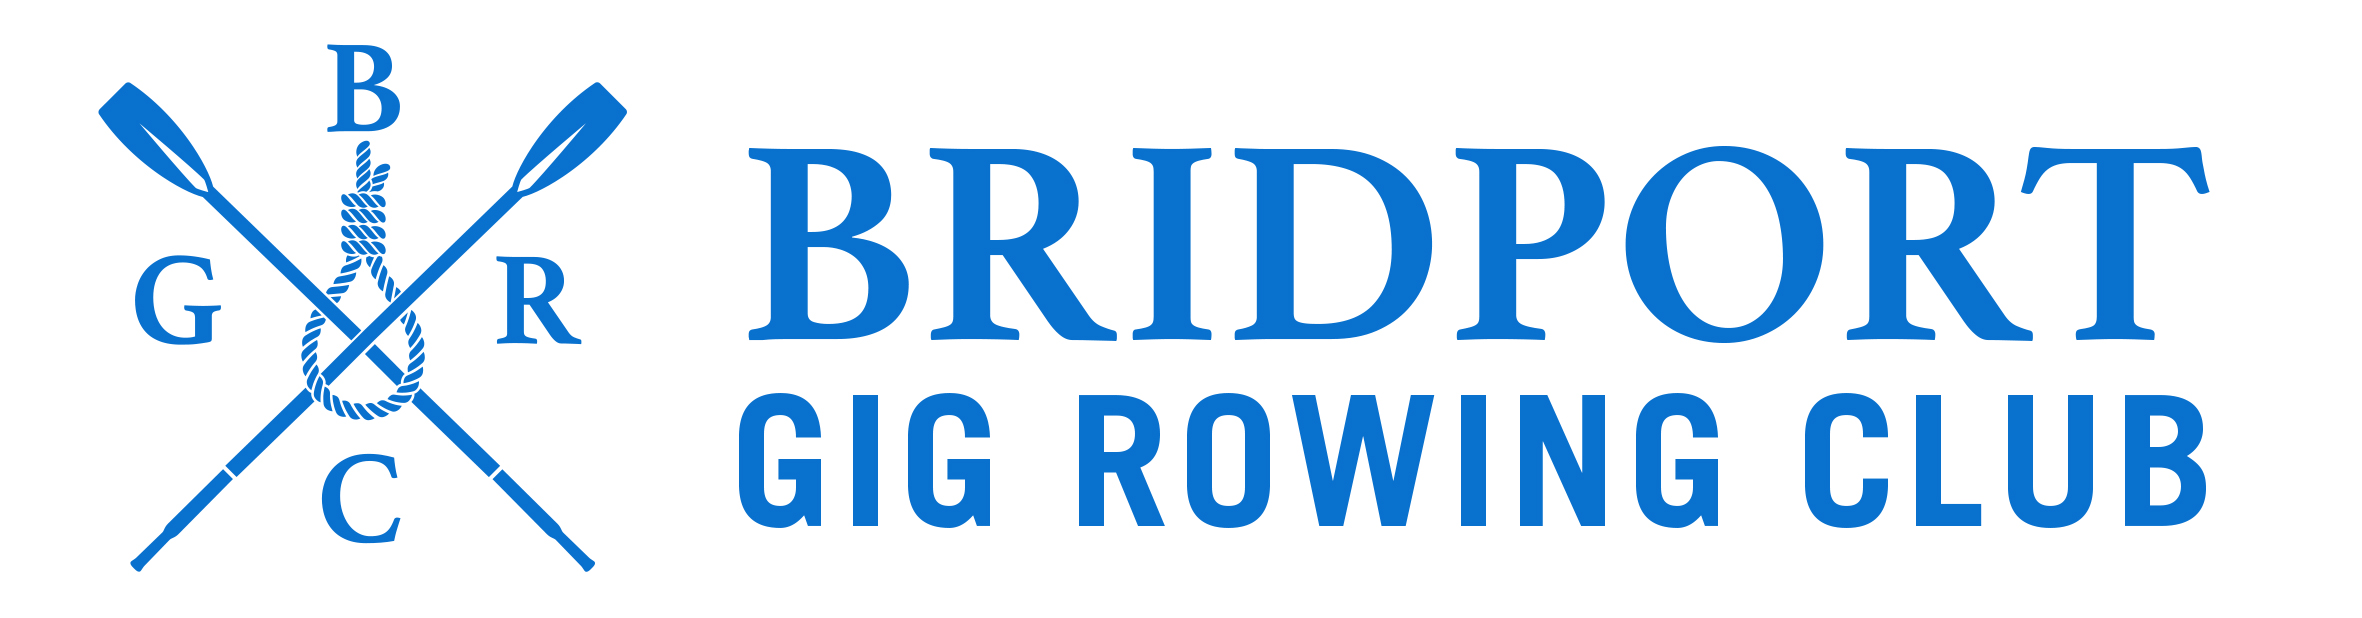 Bridport Gig Rowing Club